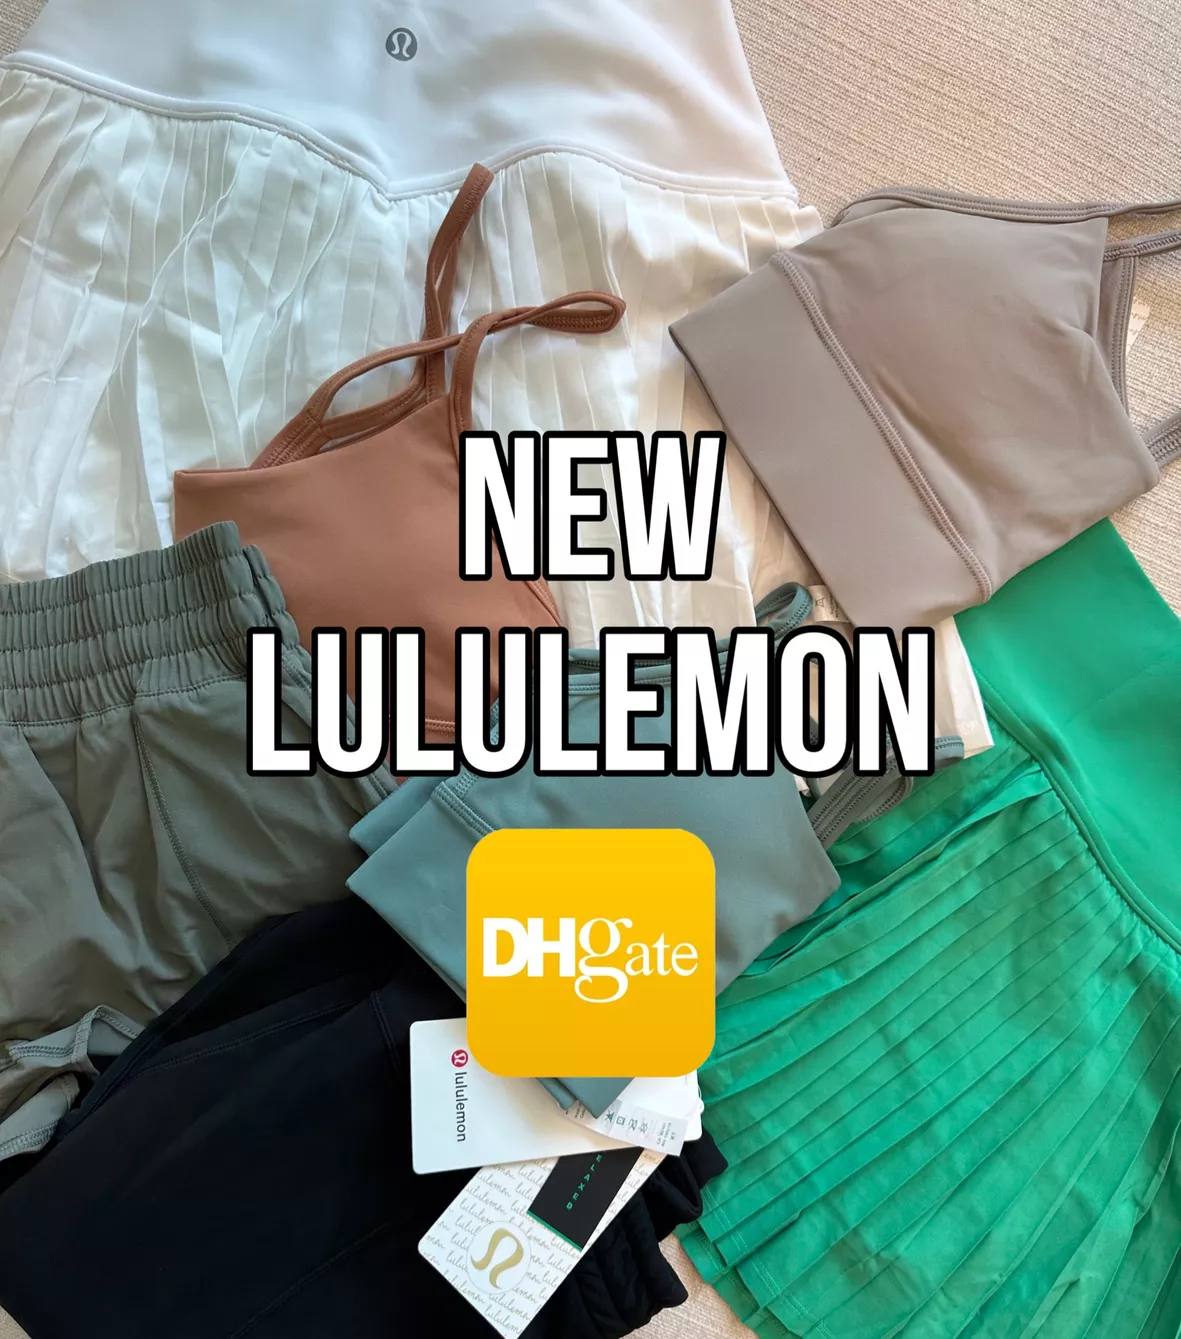 Chiararaceto's LULULEMON Collection on LTK